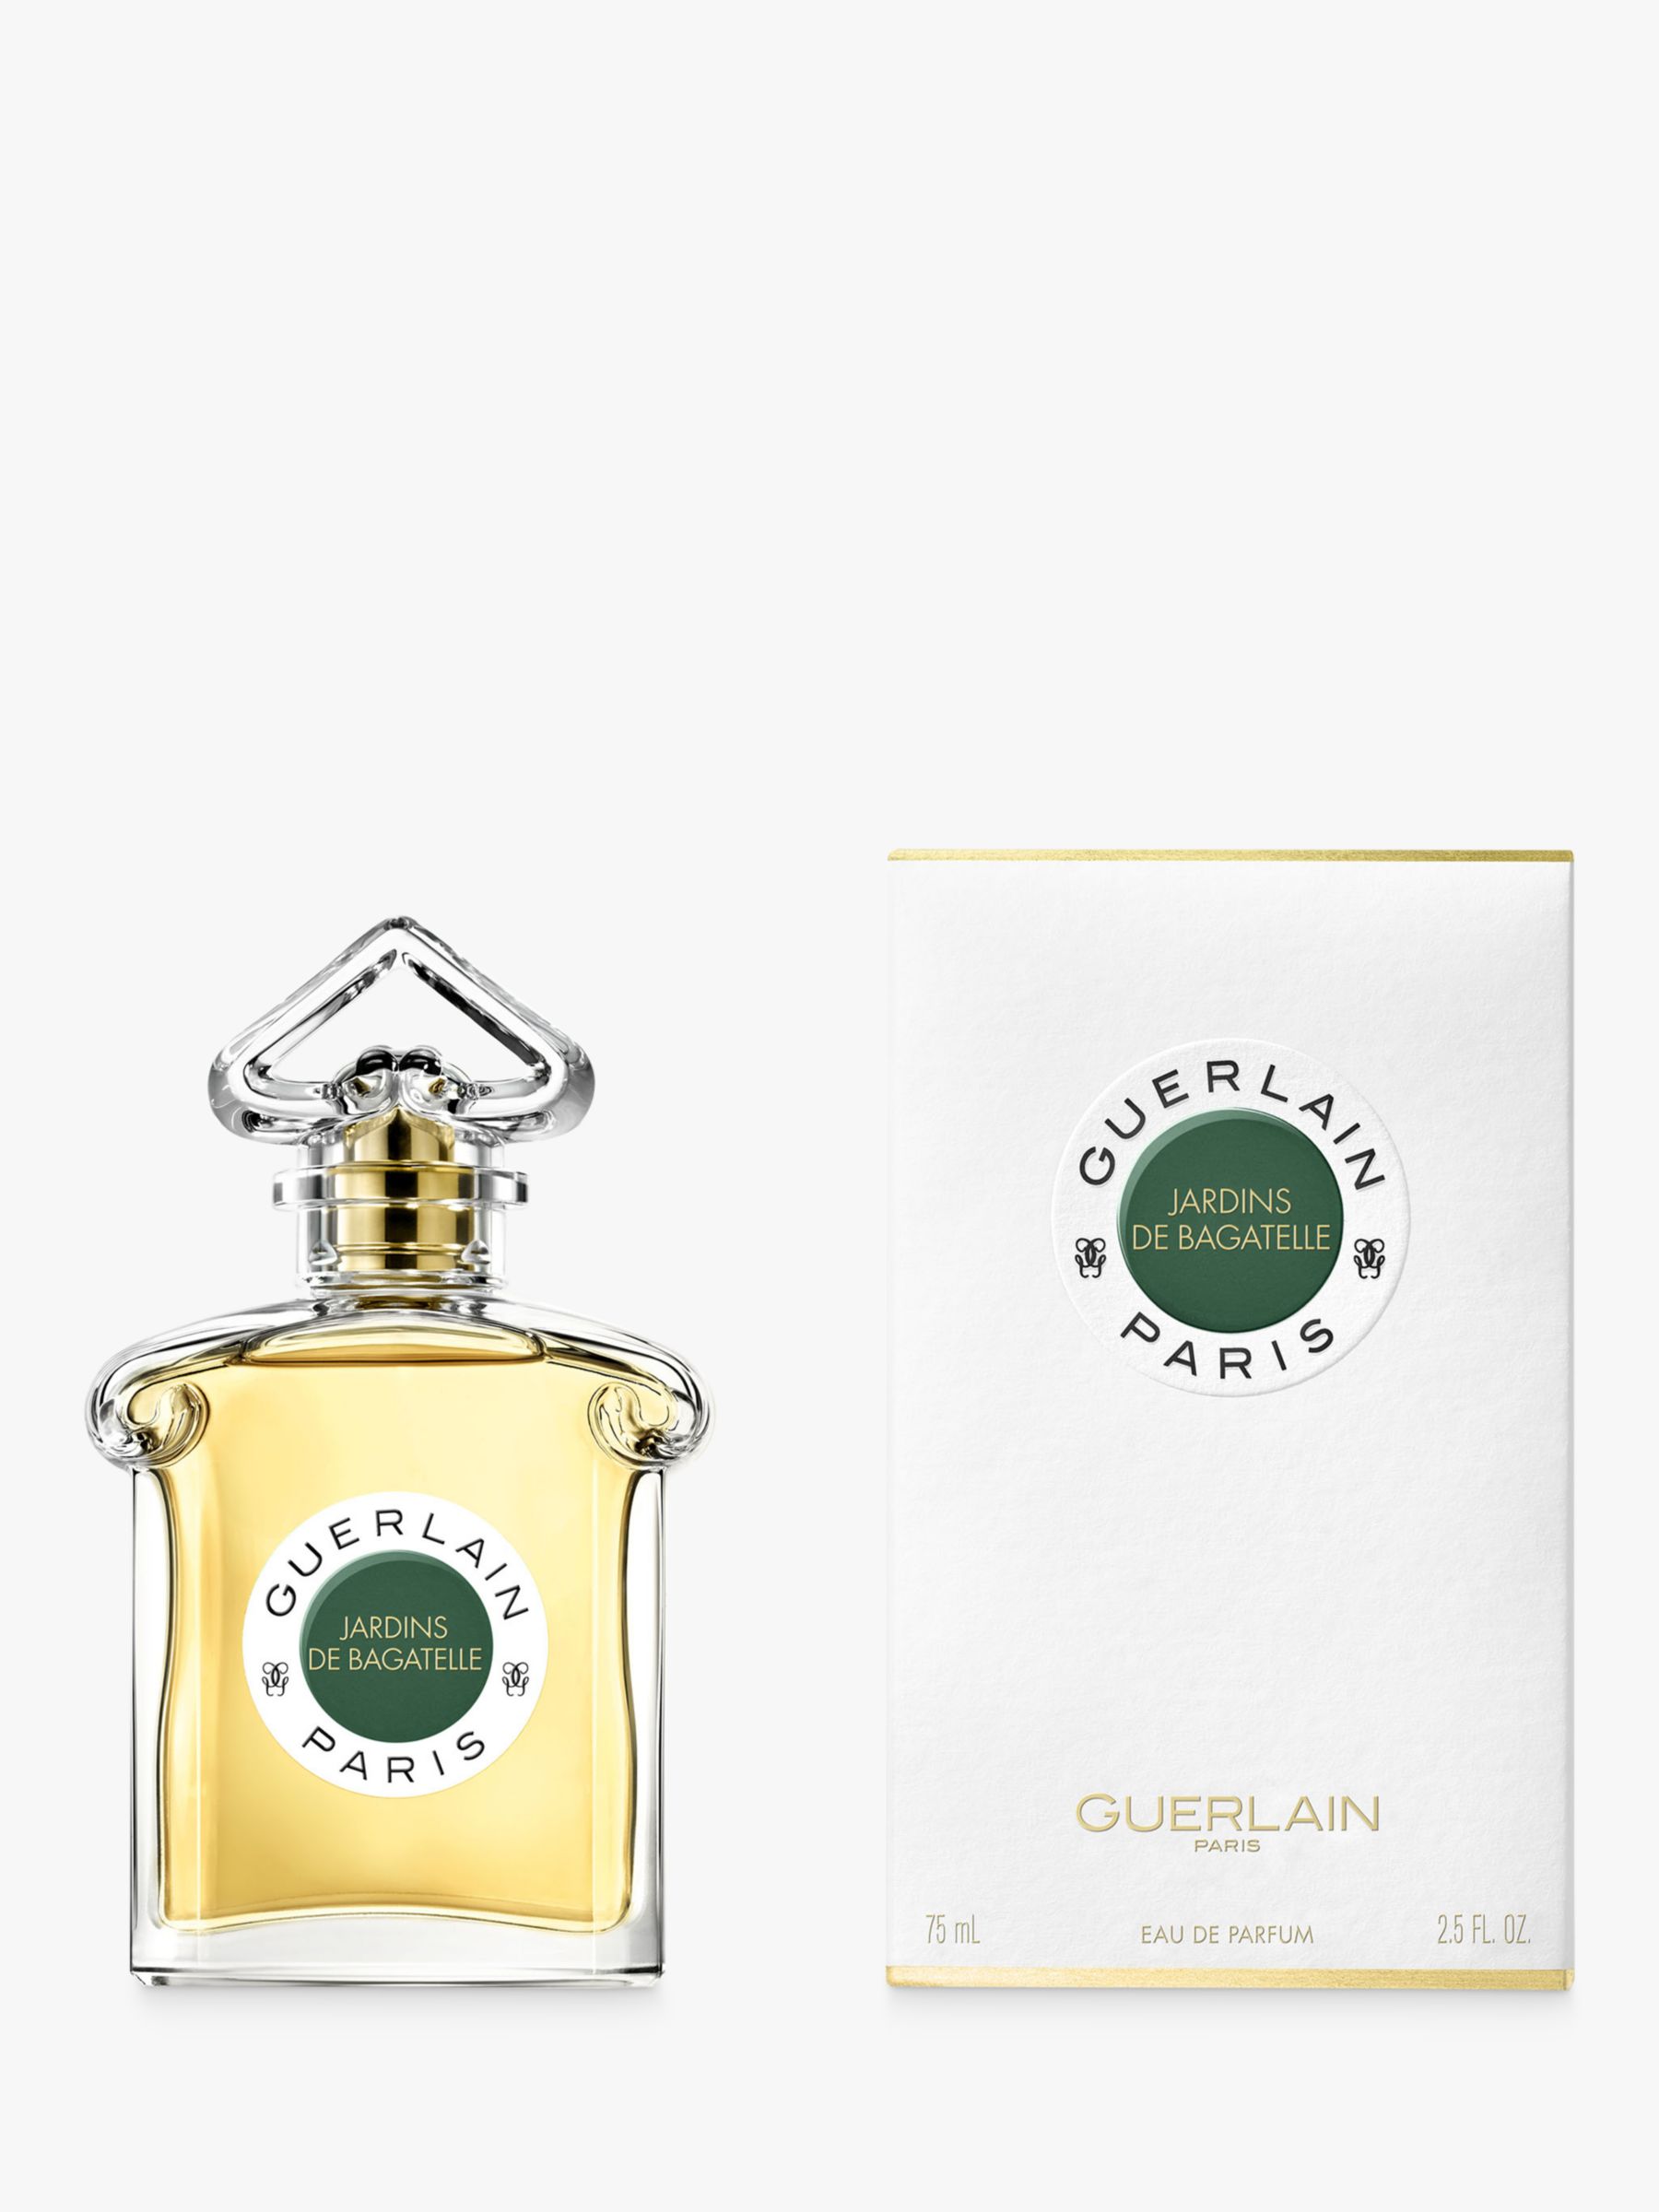 Guerlain Jardins de Bagatelle Eau de Parfum, 75ml 8